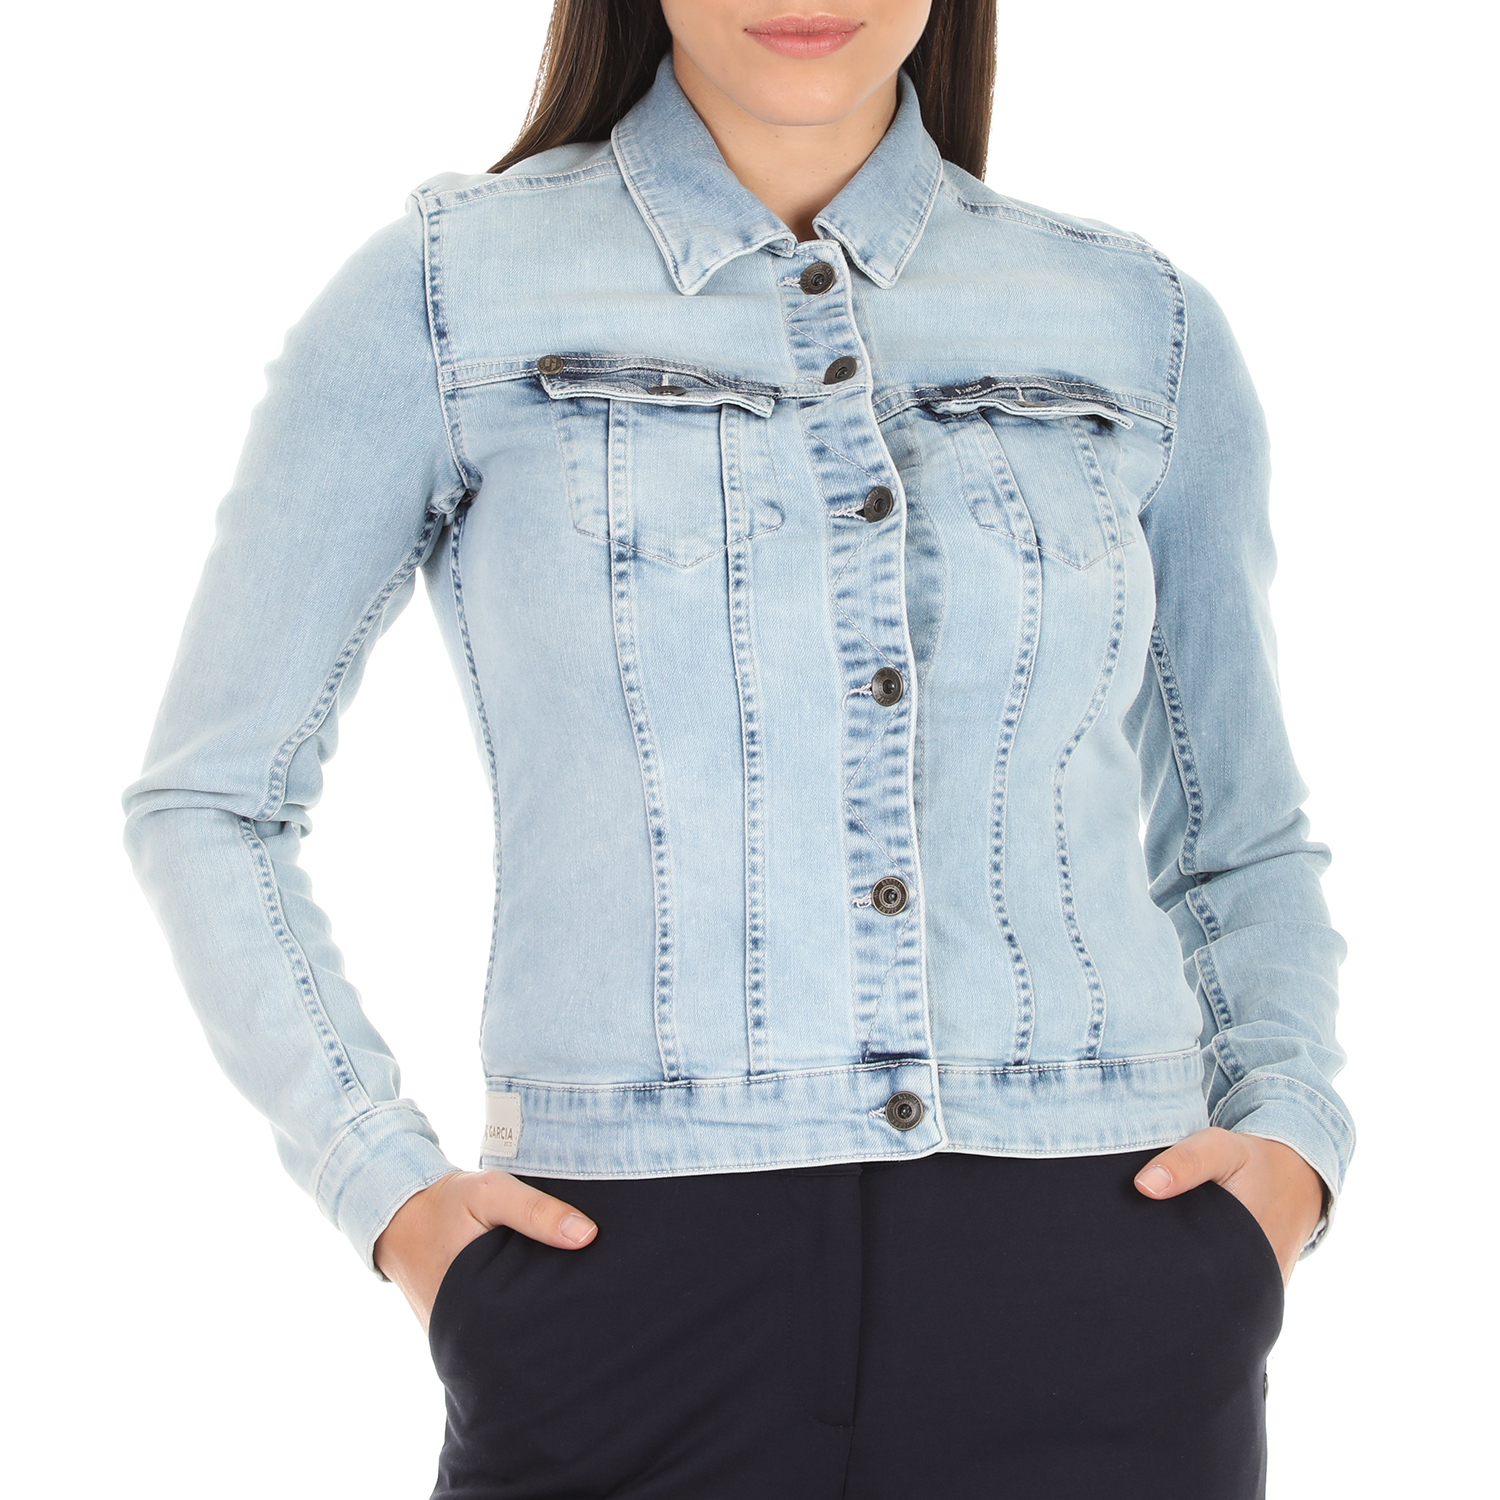 Γυναικεία/Ρούχα/Πανωφόρια/Τζάκετς GARCIA JEANS - Γυναικείο jean jacket GARCIA JEANS μπλε